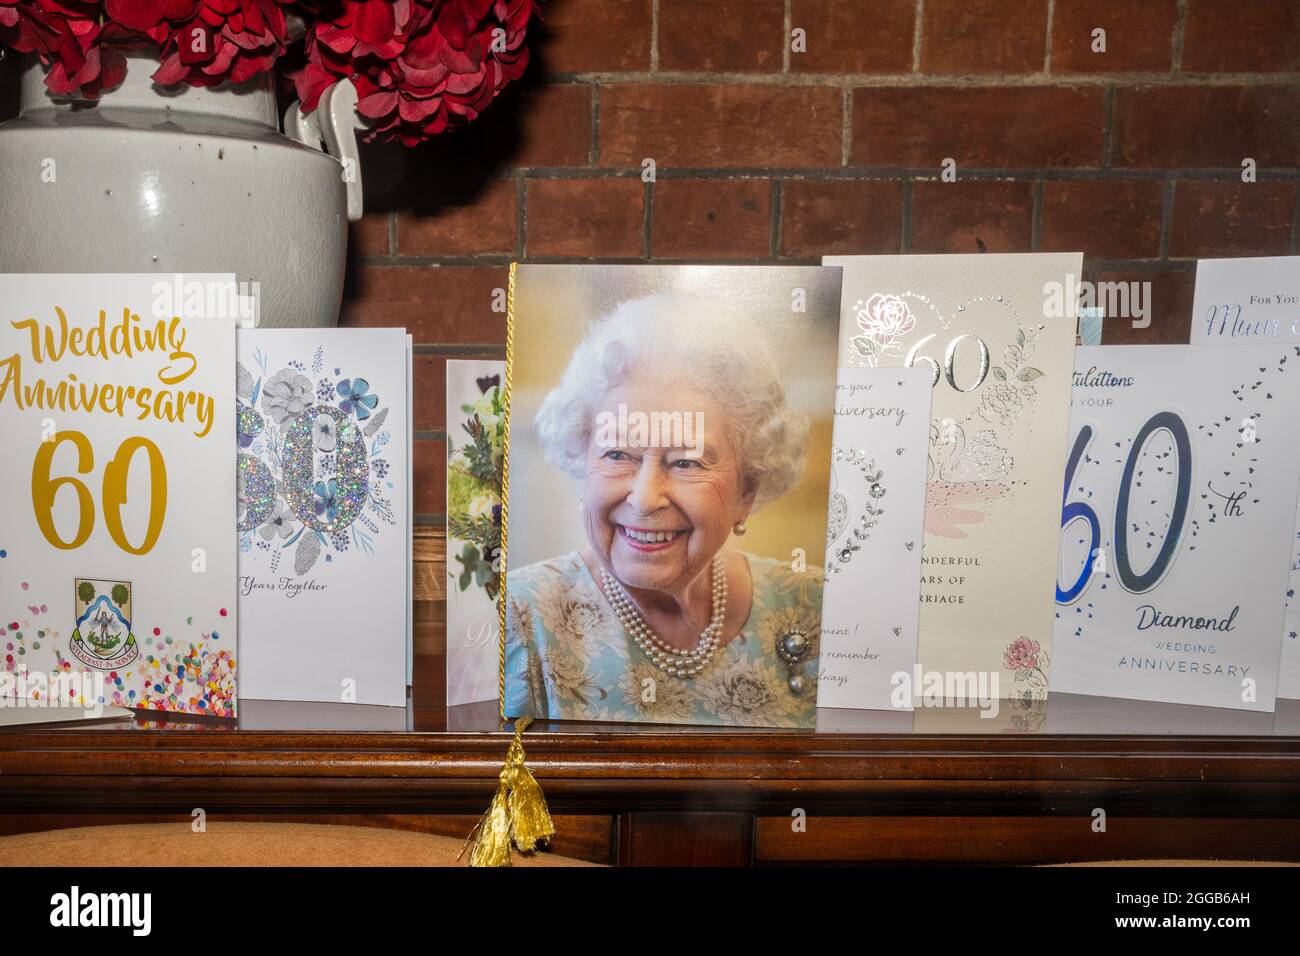 Mostra delle carte per il 60° anniversario di matrimonio o del Diamante, inclusa una carta della Regina, Regno Unito Foto Stock